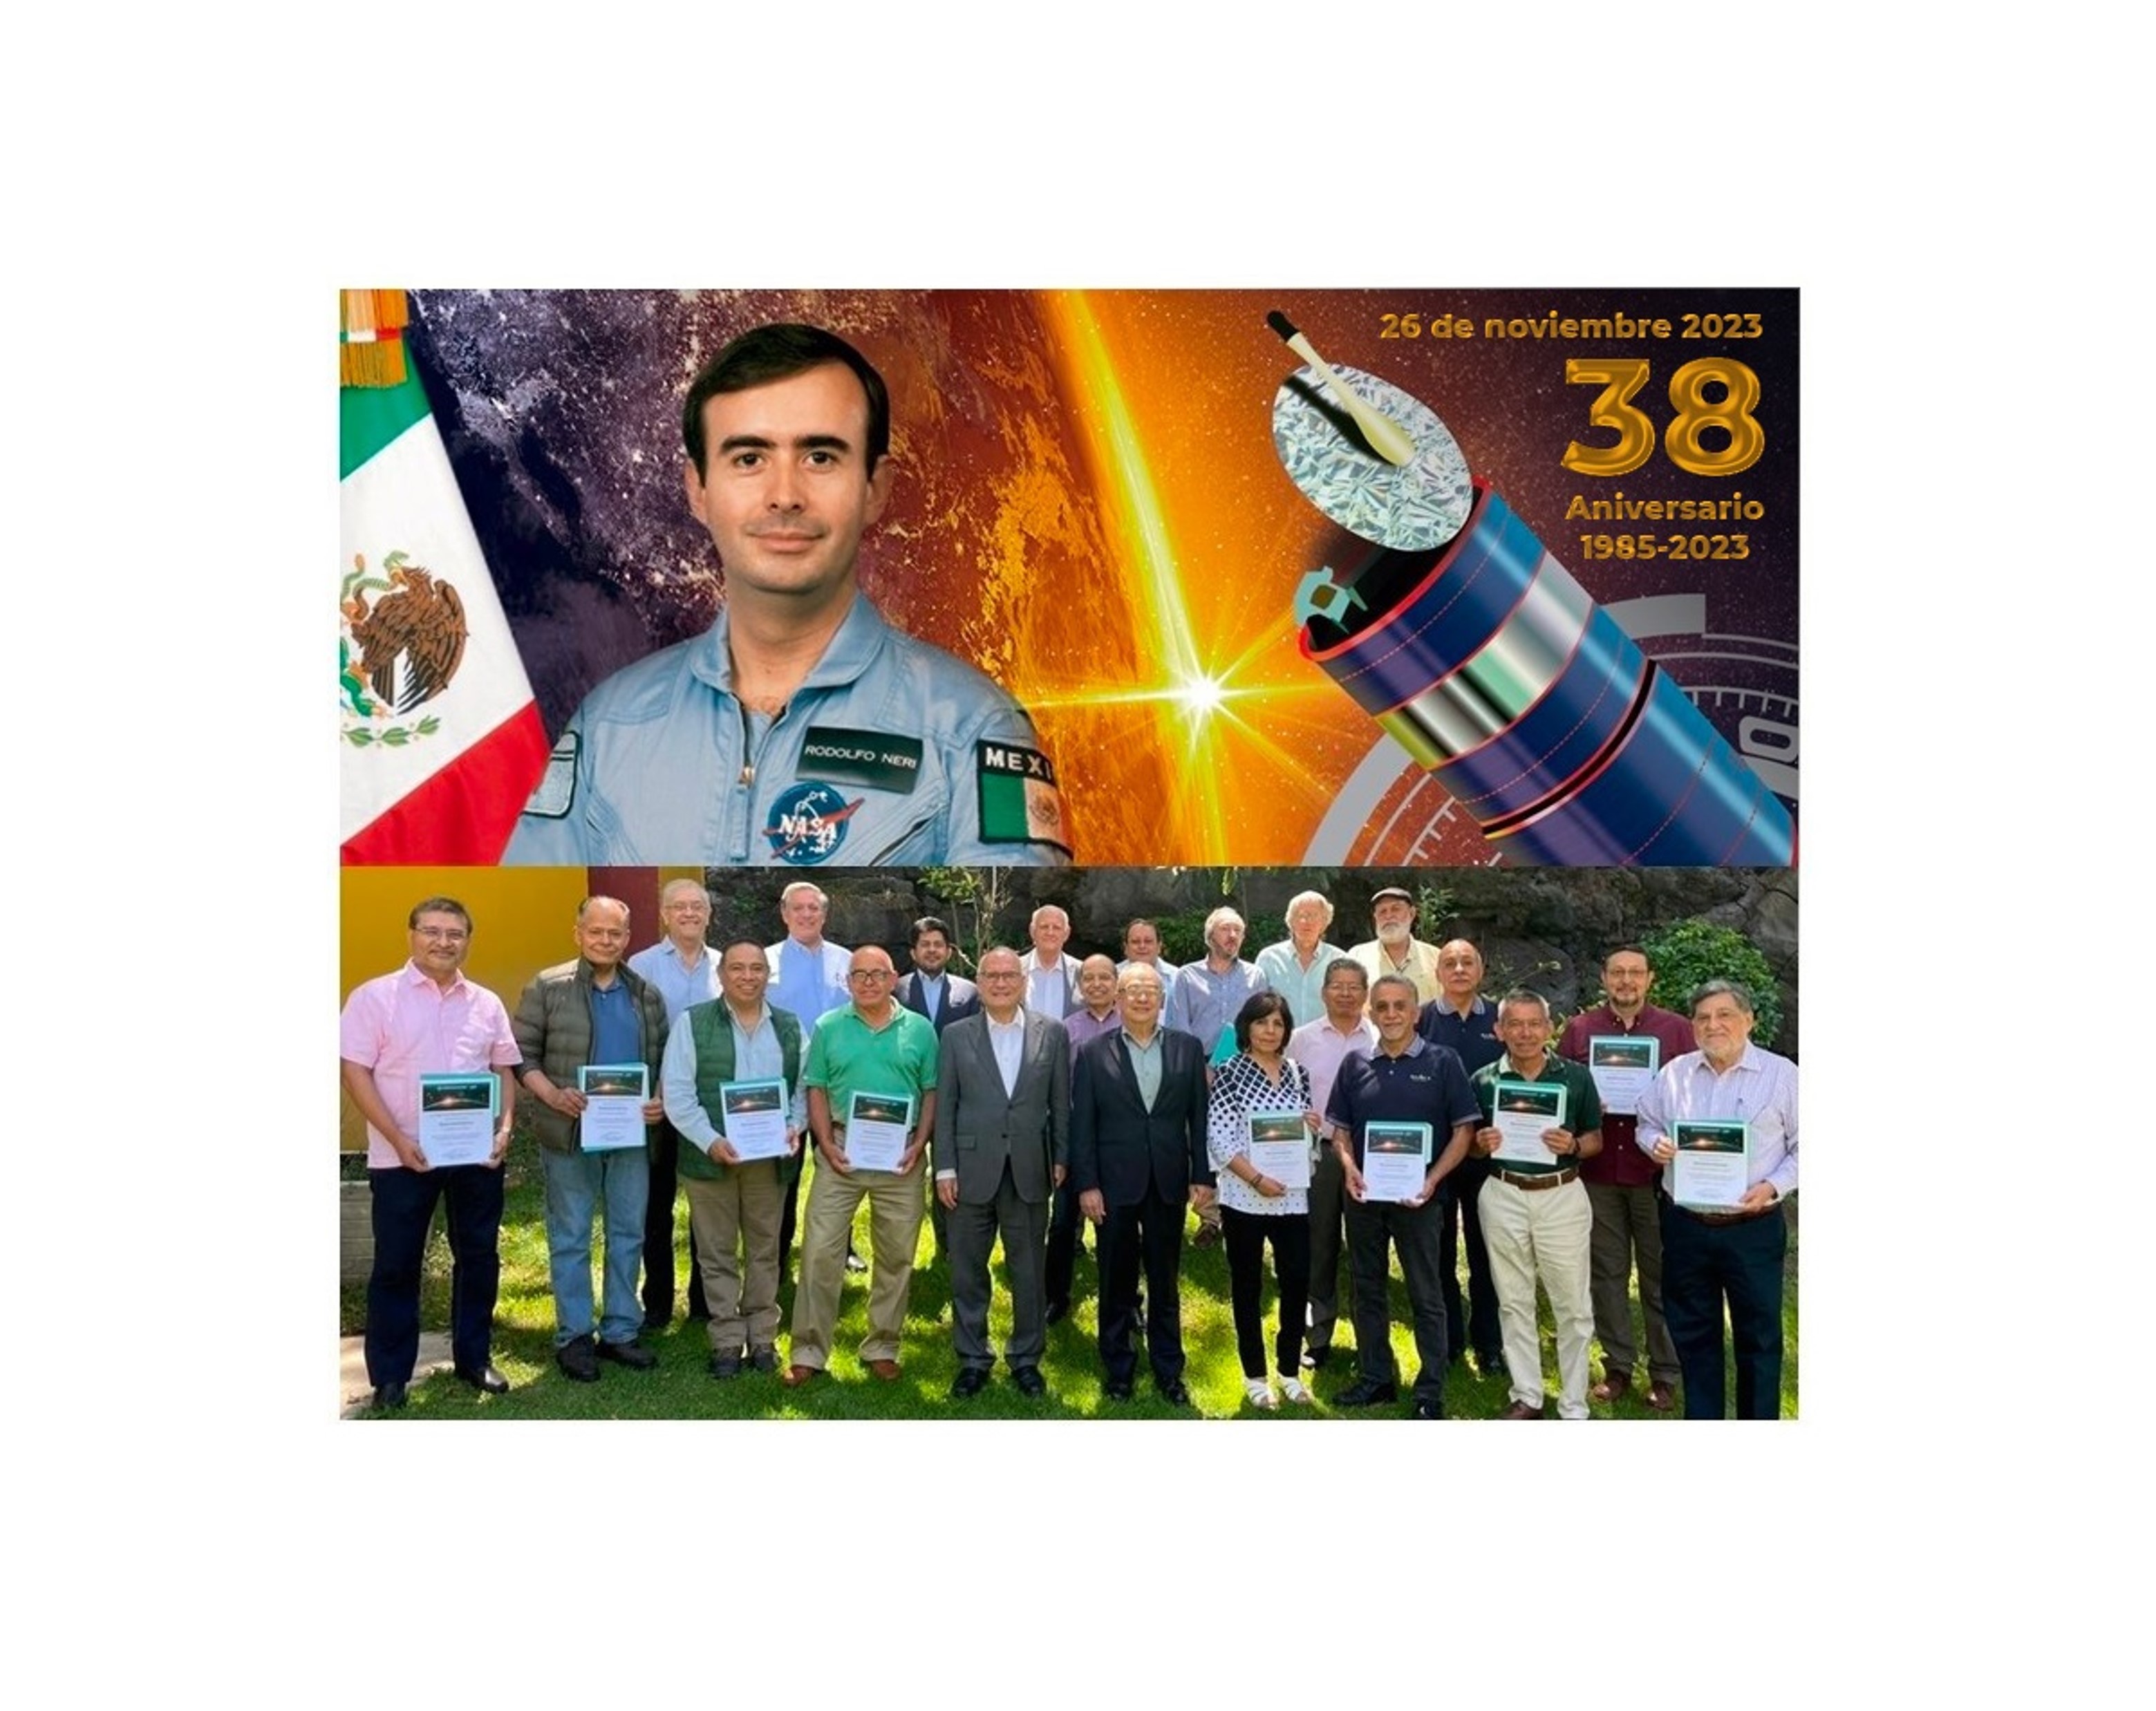 El 26 de noviembre de 1985 la misión espacial despegó desde Cabo Cañaveral, marcando el día en que México consolidaría su entrada al selecto grupo de países del mundo con actividad espacial, tras la puesta en órbita del satélite “.